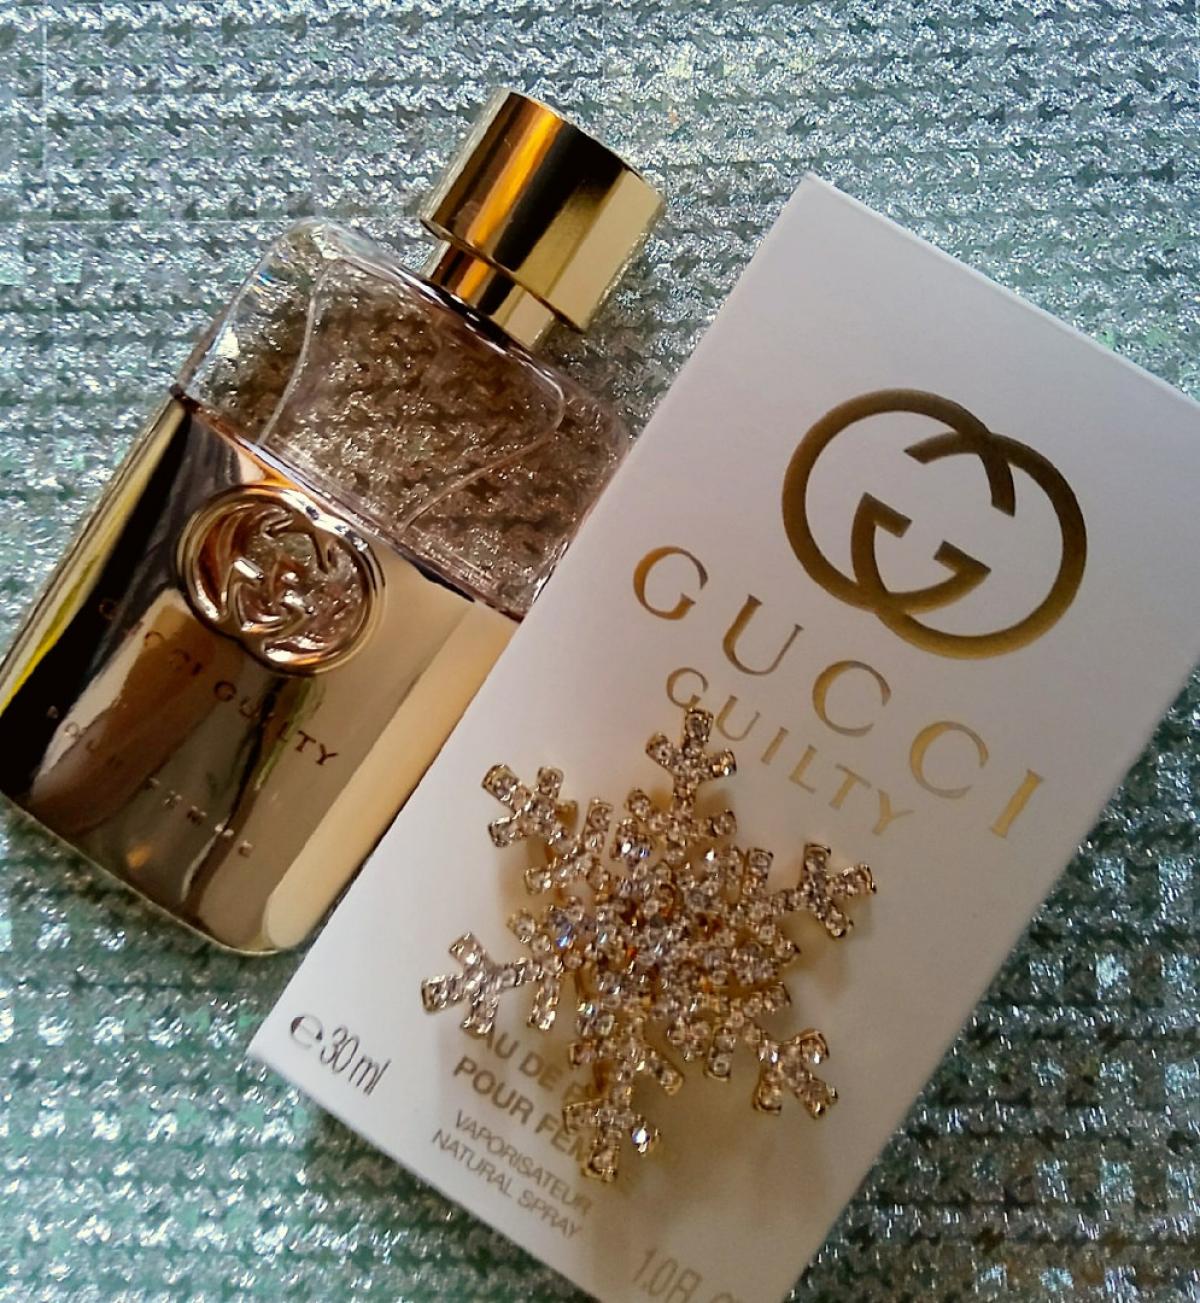 Gucci Guilty Eau de Parfum Gucci άρωμα - ένα νέο άρωμα για γυναίκες 2019